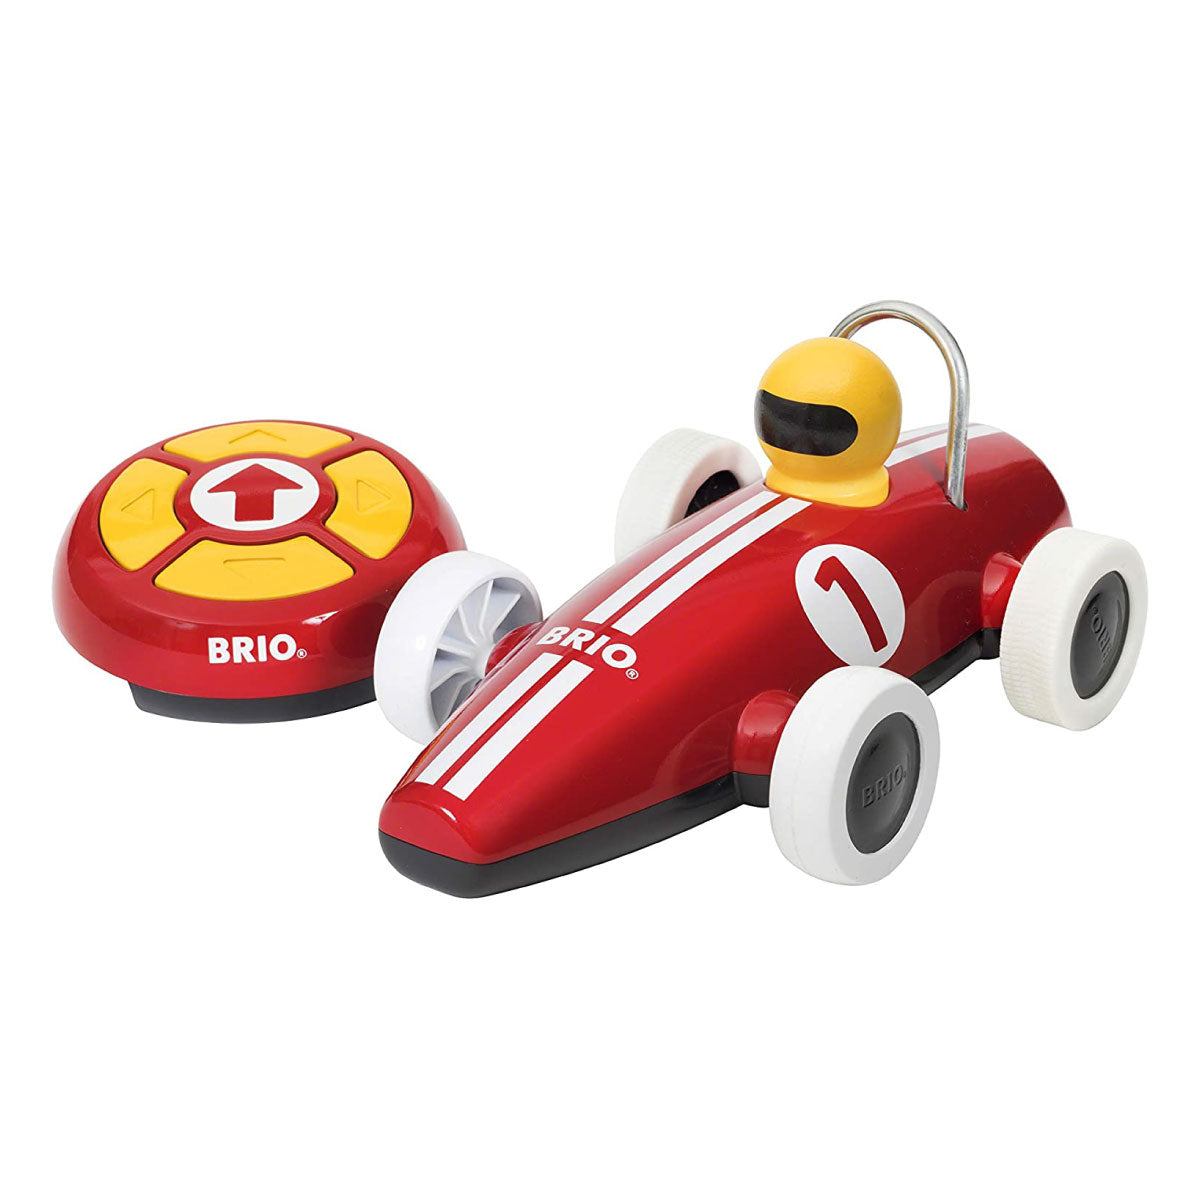 Brio Remote Control Race Car